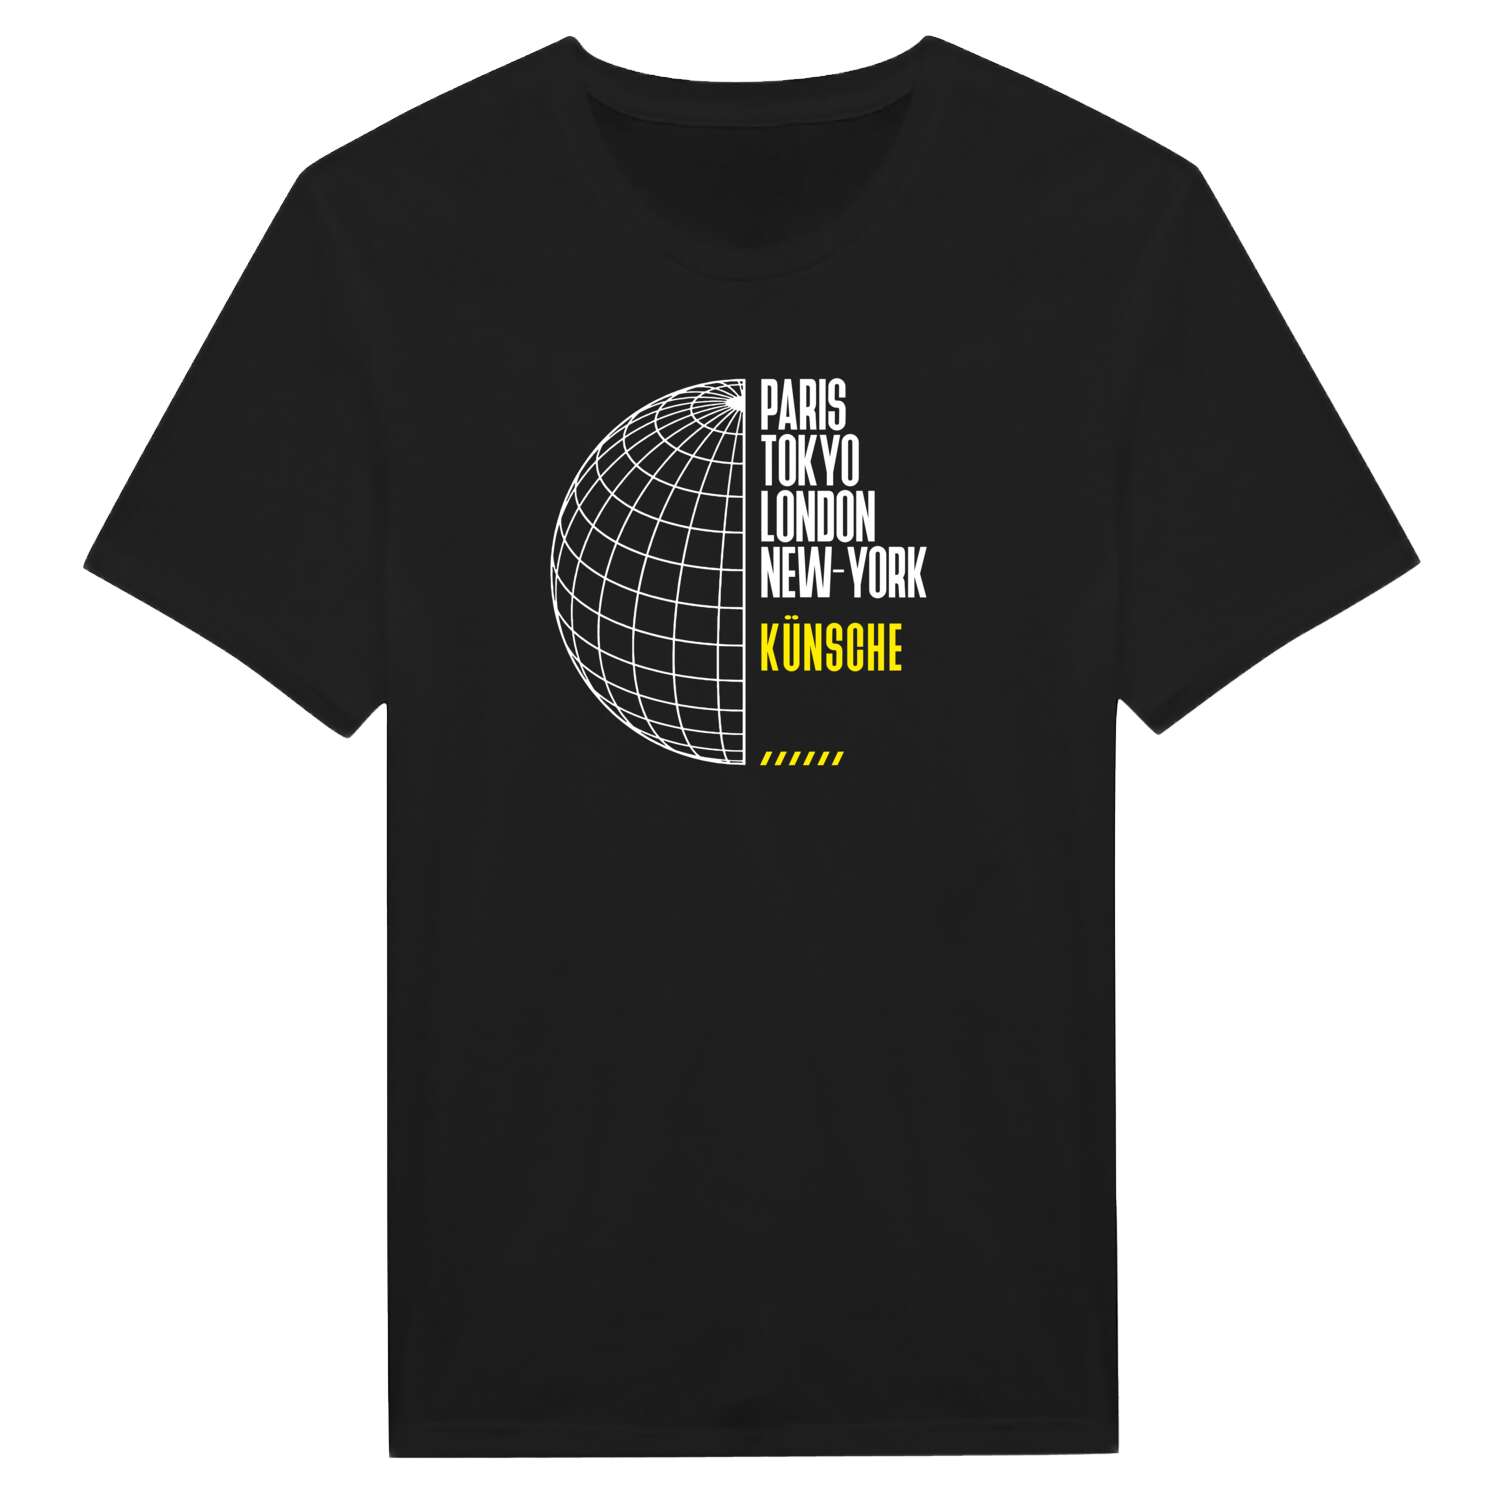 Künsche T-Shirt »Paris Tokyo London«